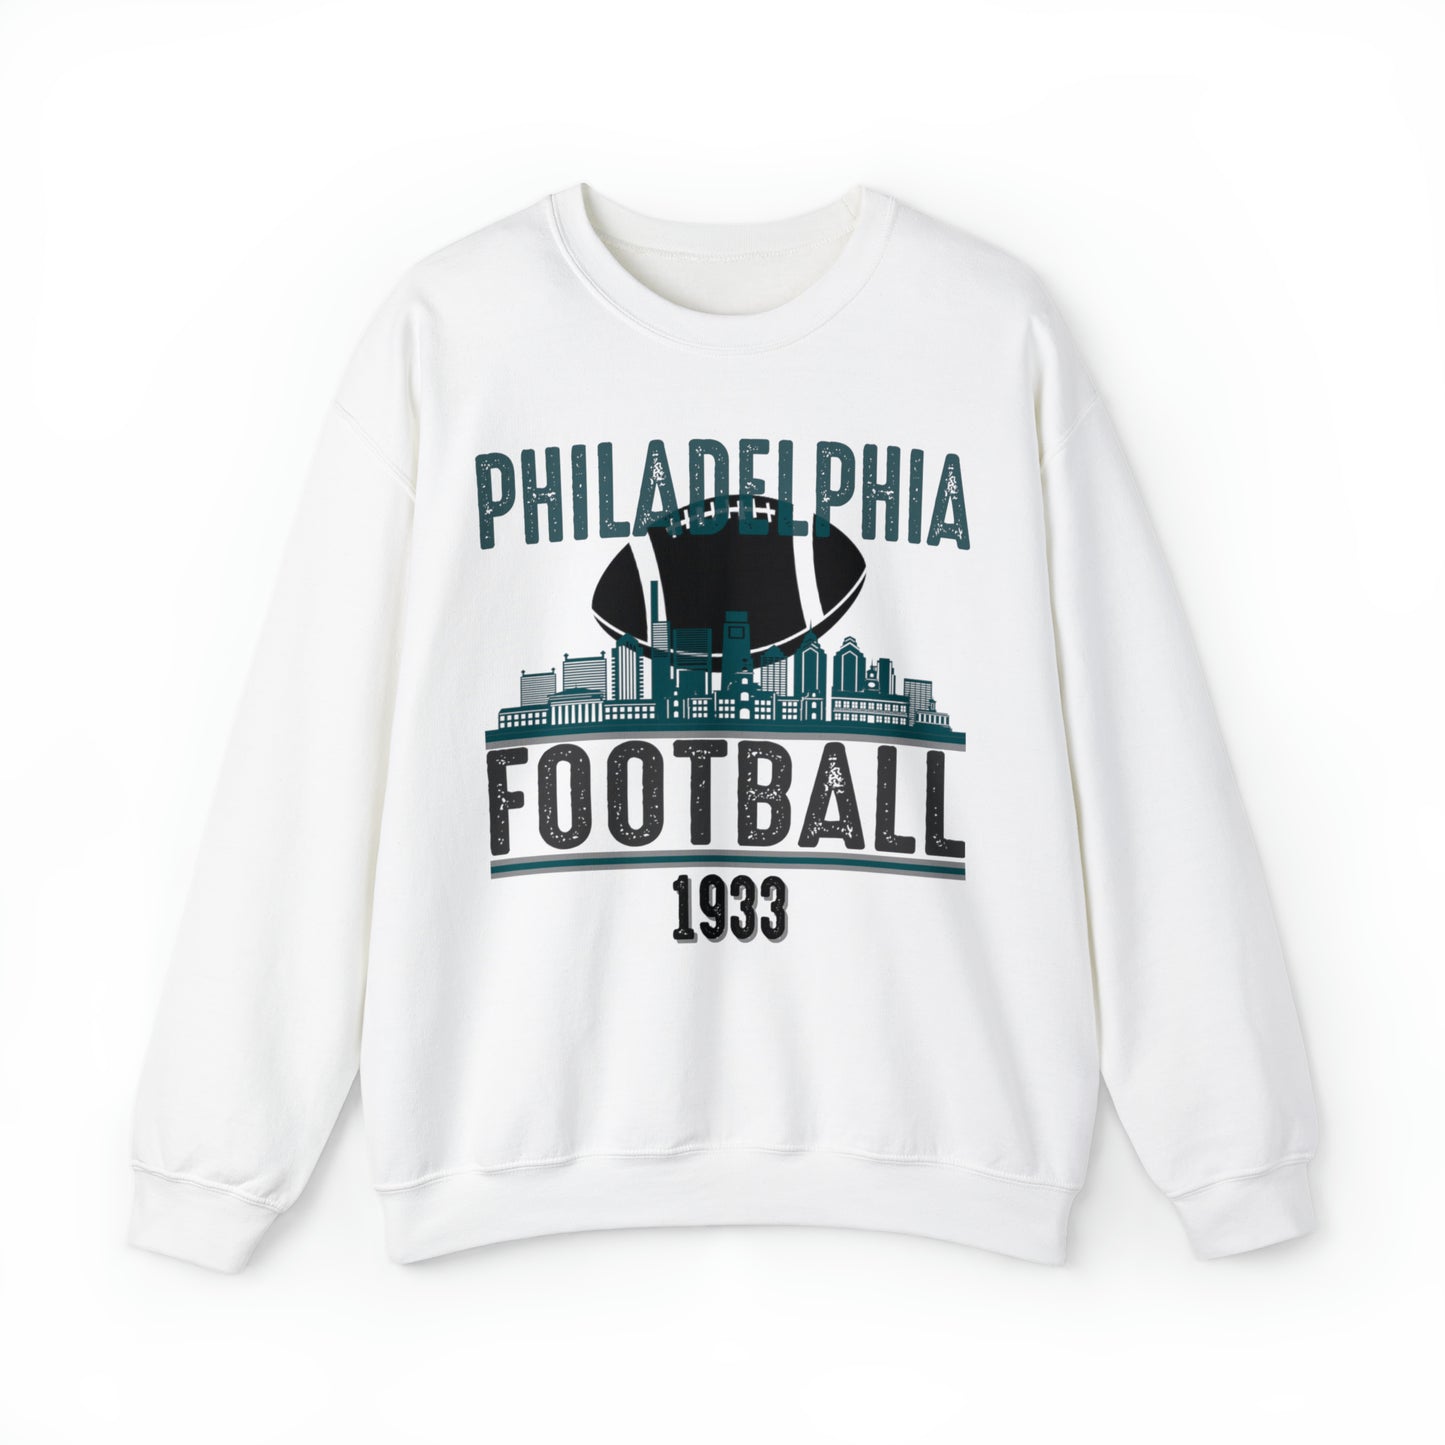 Philadelphia Eagles Football Sweatshirt